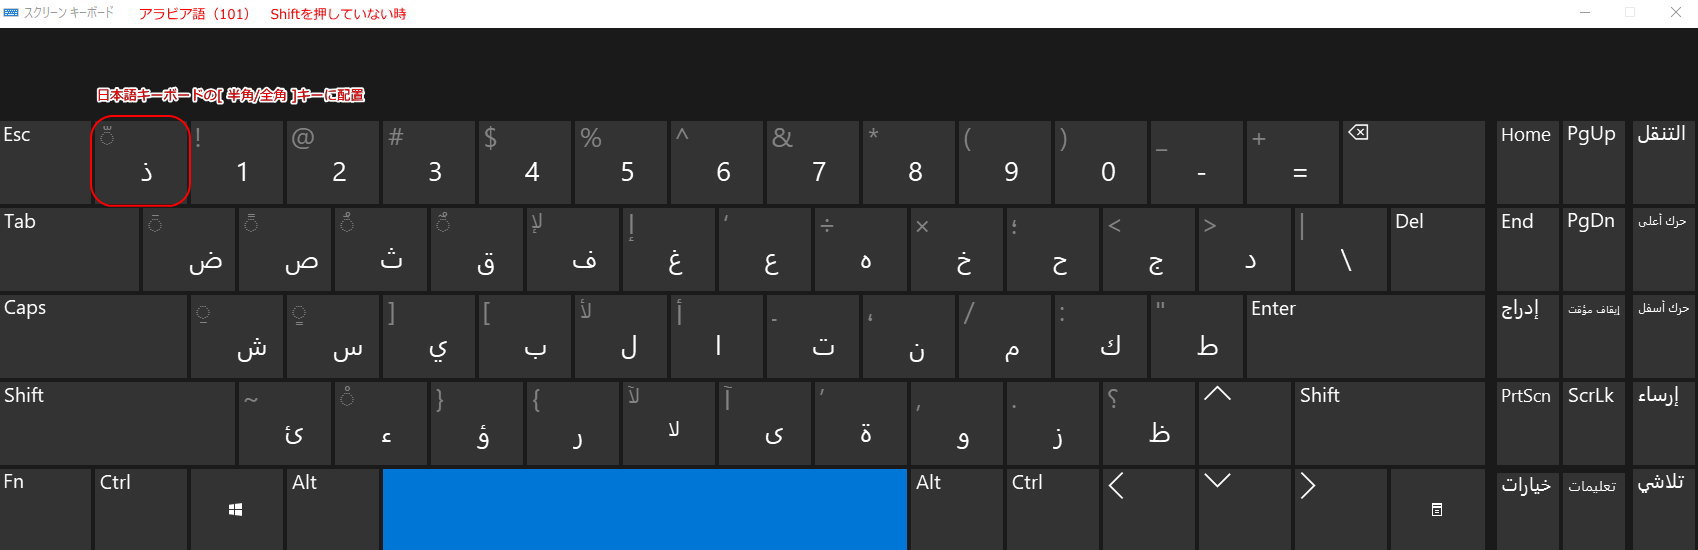 Windows 10でアラビア語 4 入力に関する細かい注意事項 アラビア語学習メモ